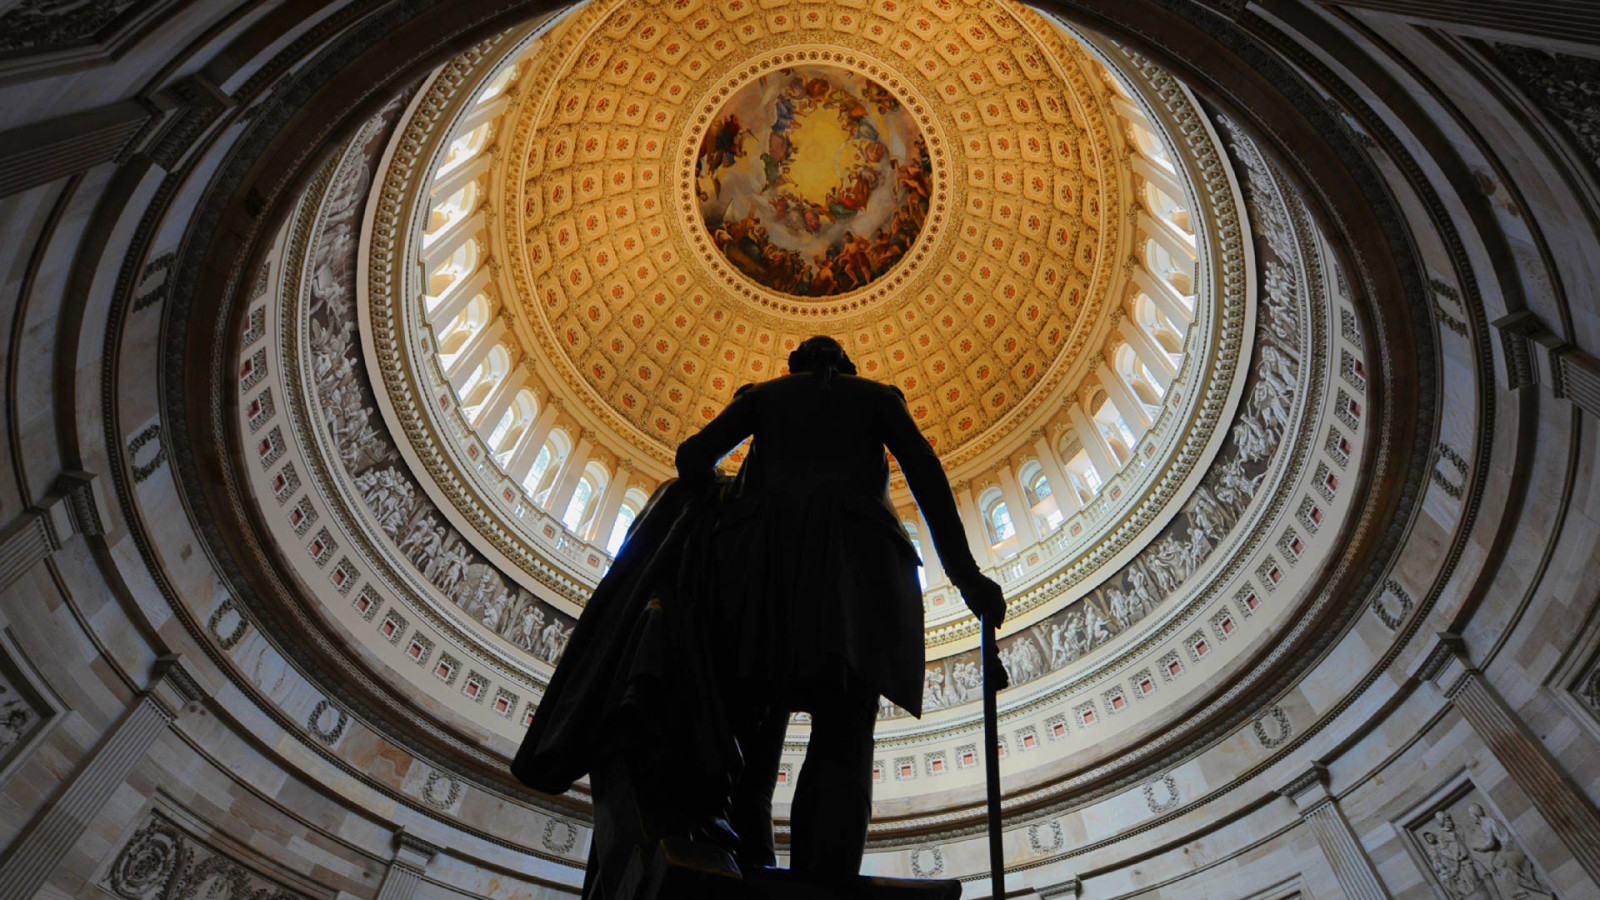 Hoa Kỳ, DC, Washington, bức tượng, Thủ đô, George Washington, nhà tròn